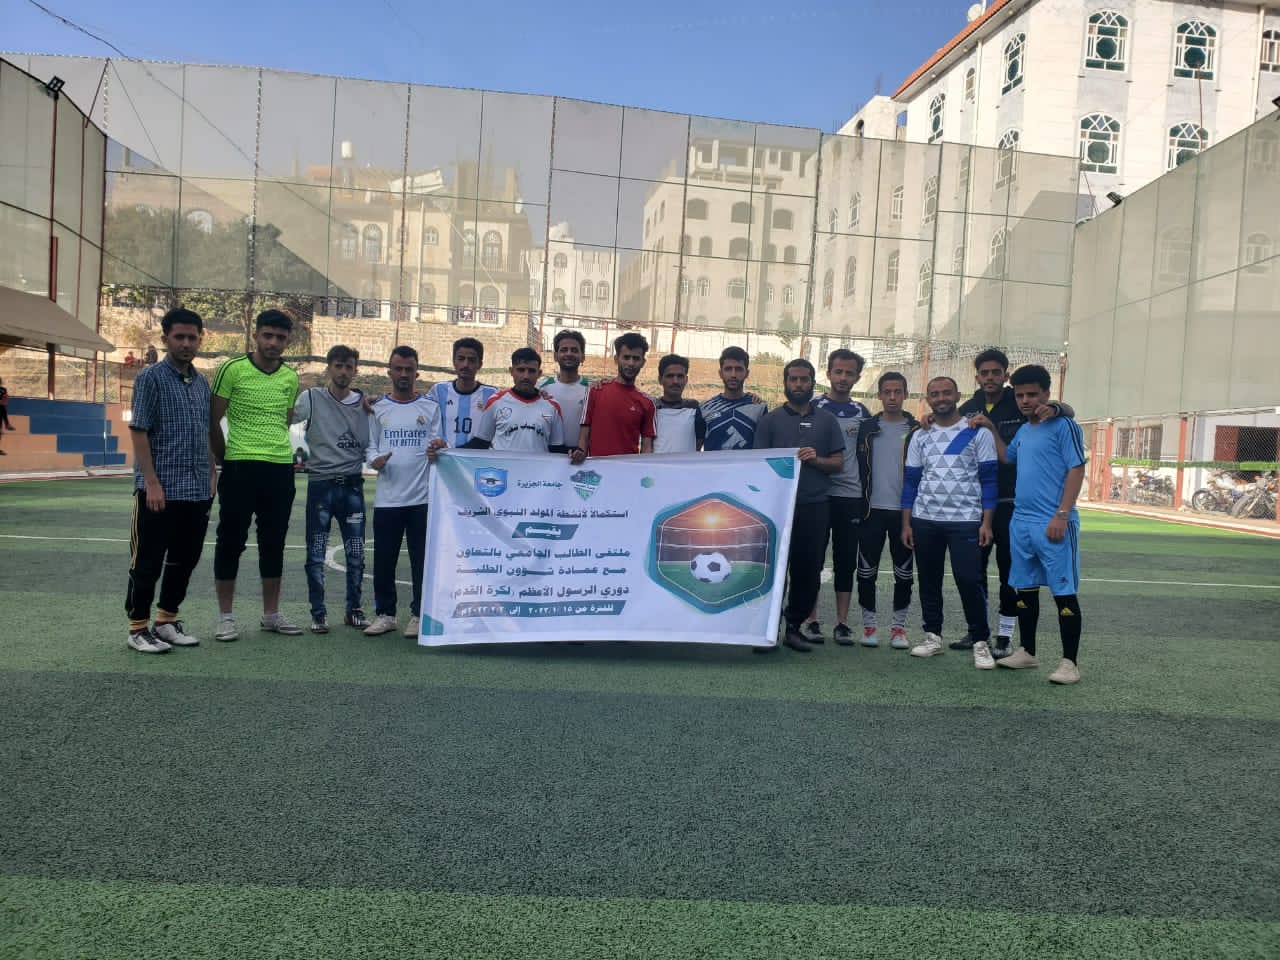 فريق الهندسة 1 يحقق أكبر فوز بدوري الرسول الأعظم لكرة القدم بجامعة الجزيرة - اليمن 